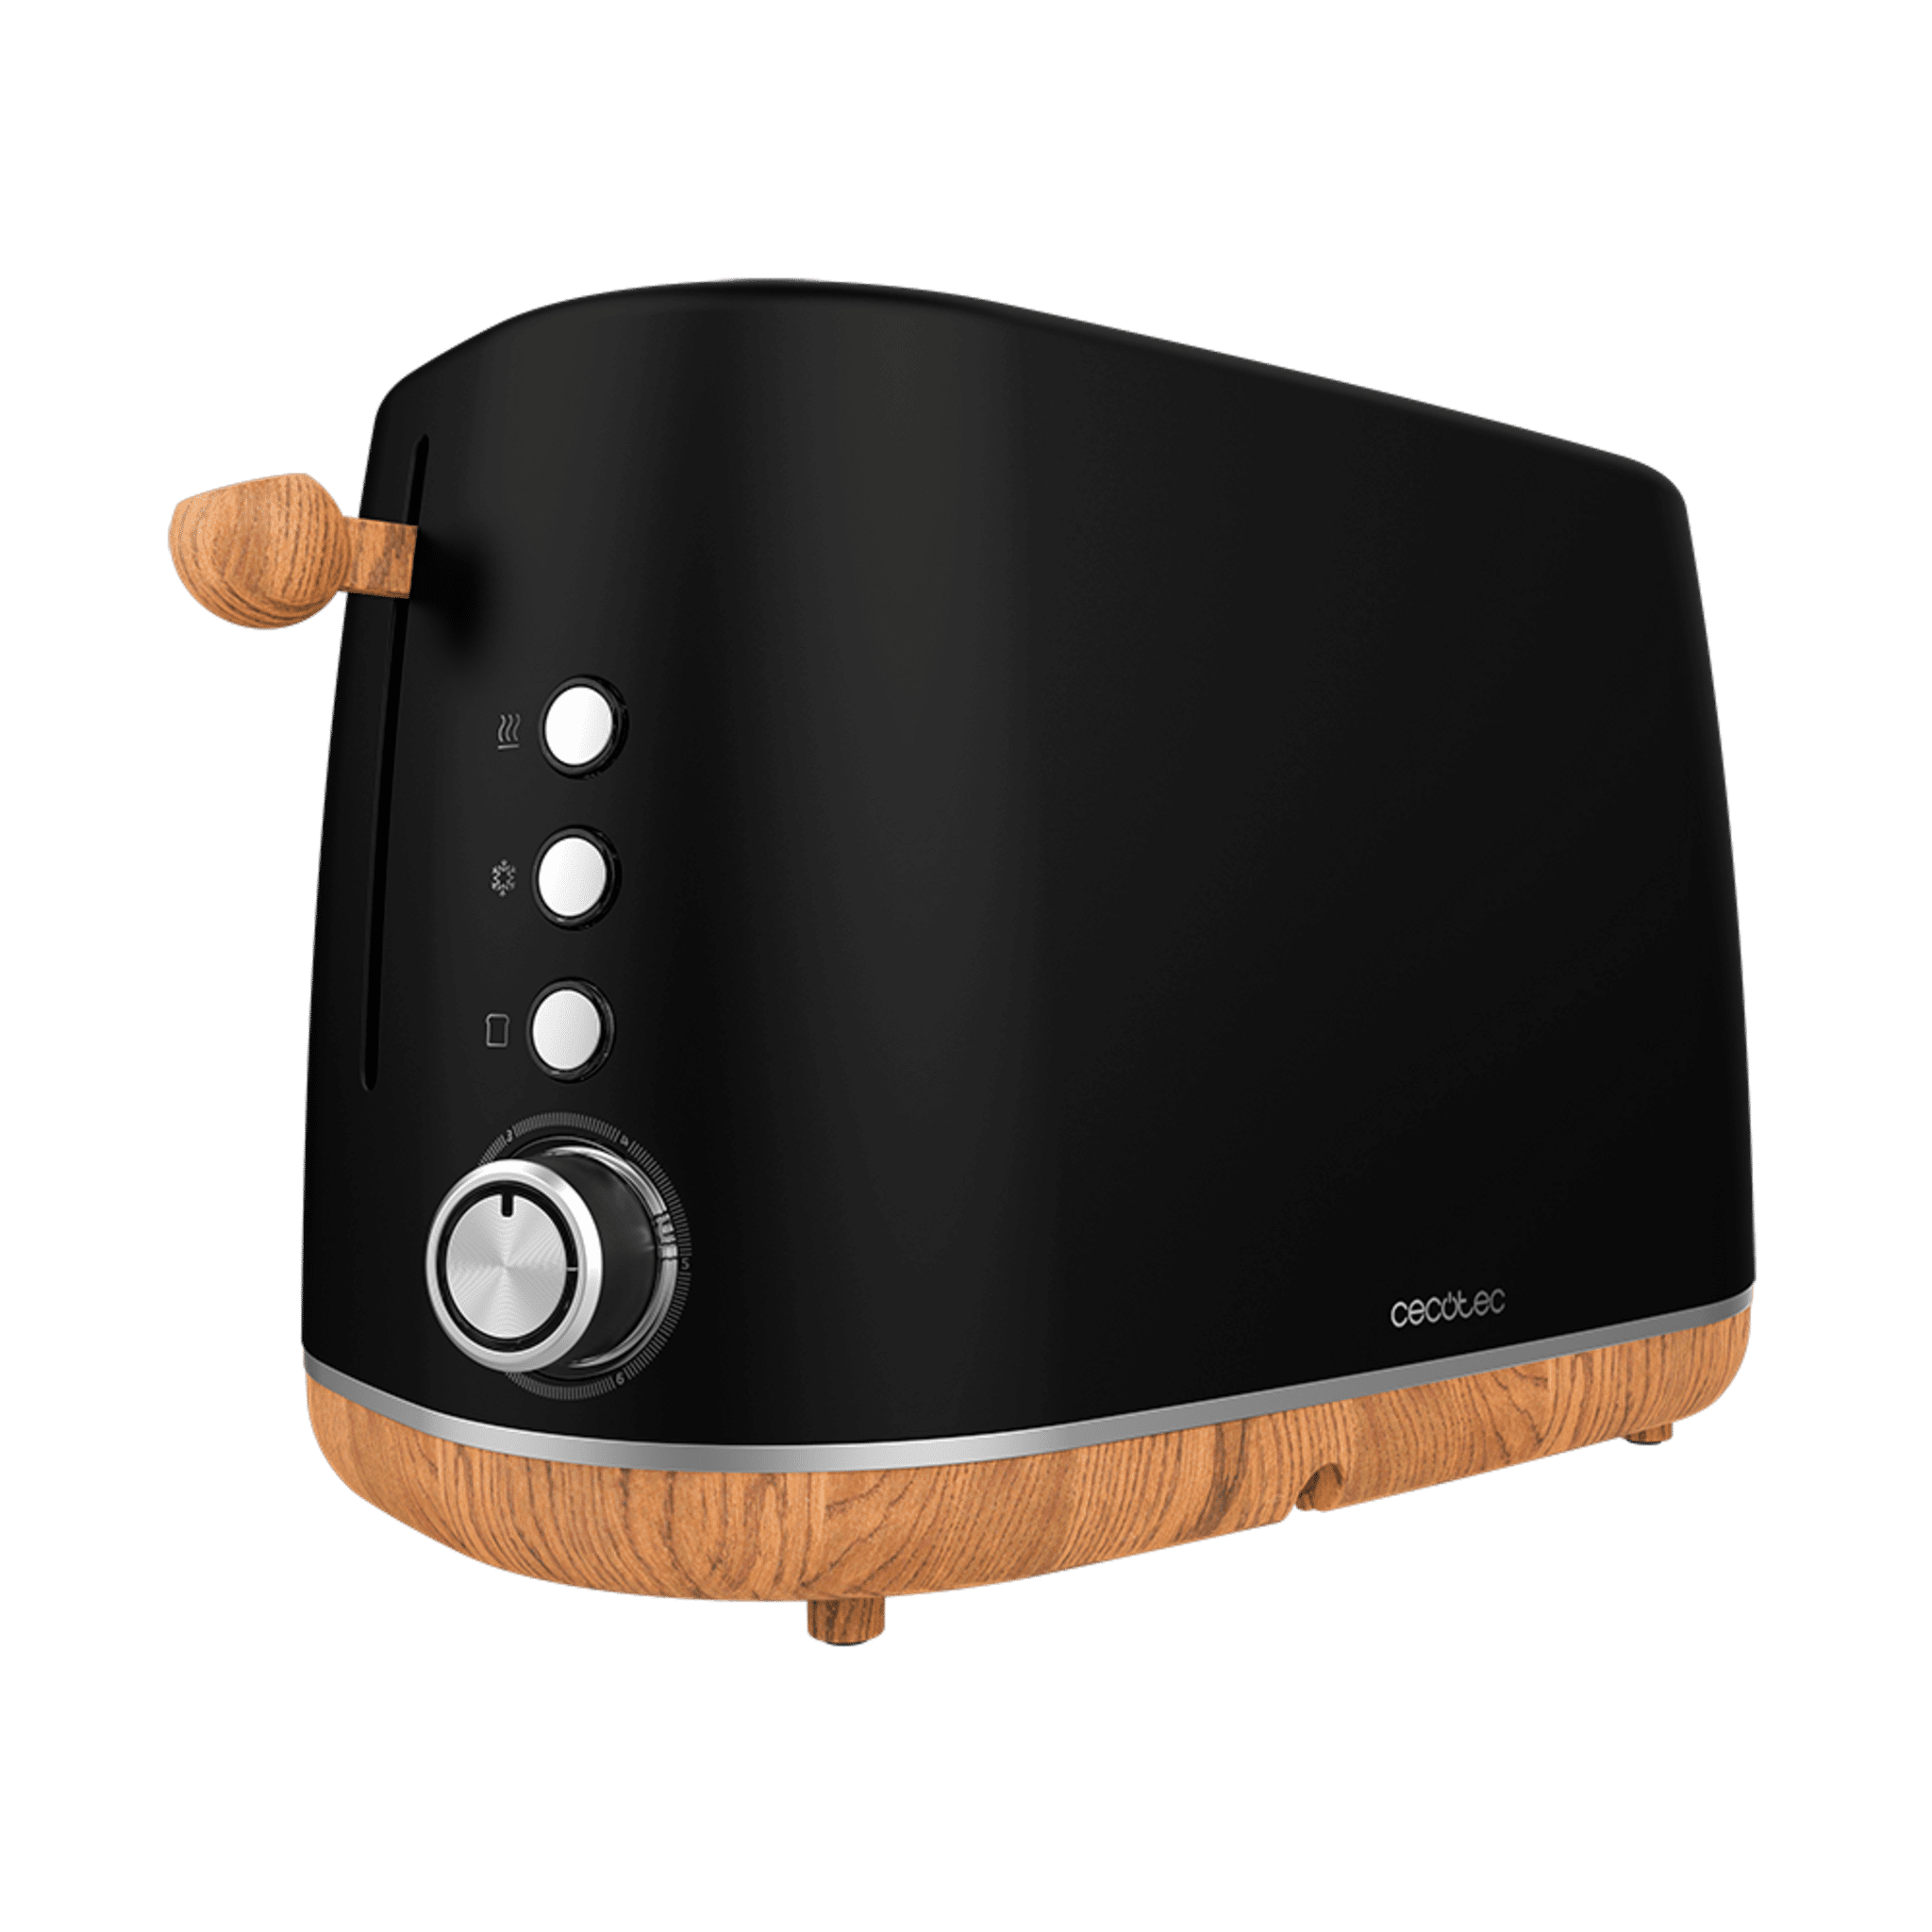 Digital Toaster TrendyToast 9000 Black Woody. 900 W, 2 extra breite Schlitze, obere Heizstäbe, Betriebskontrollleuchte